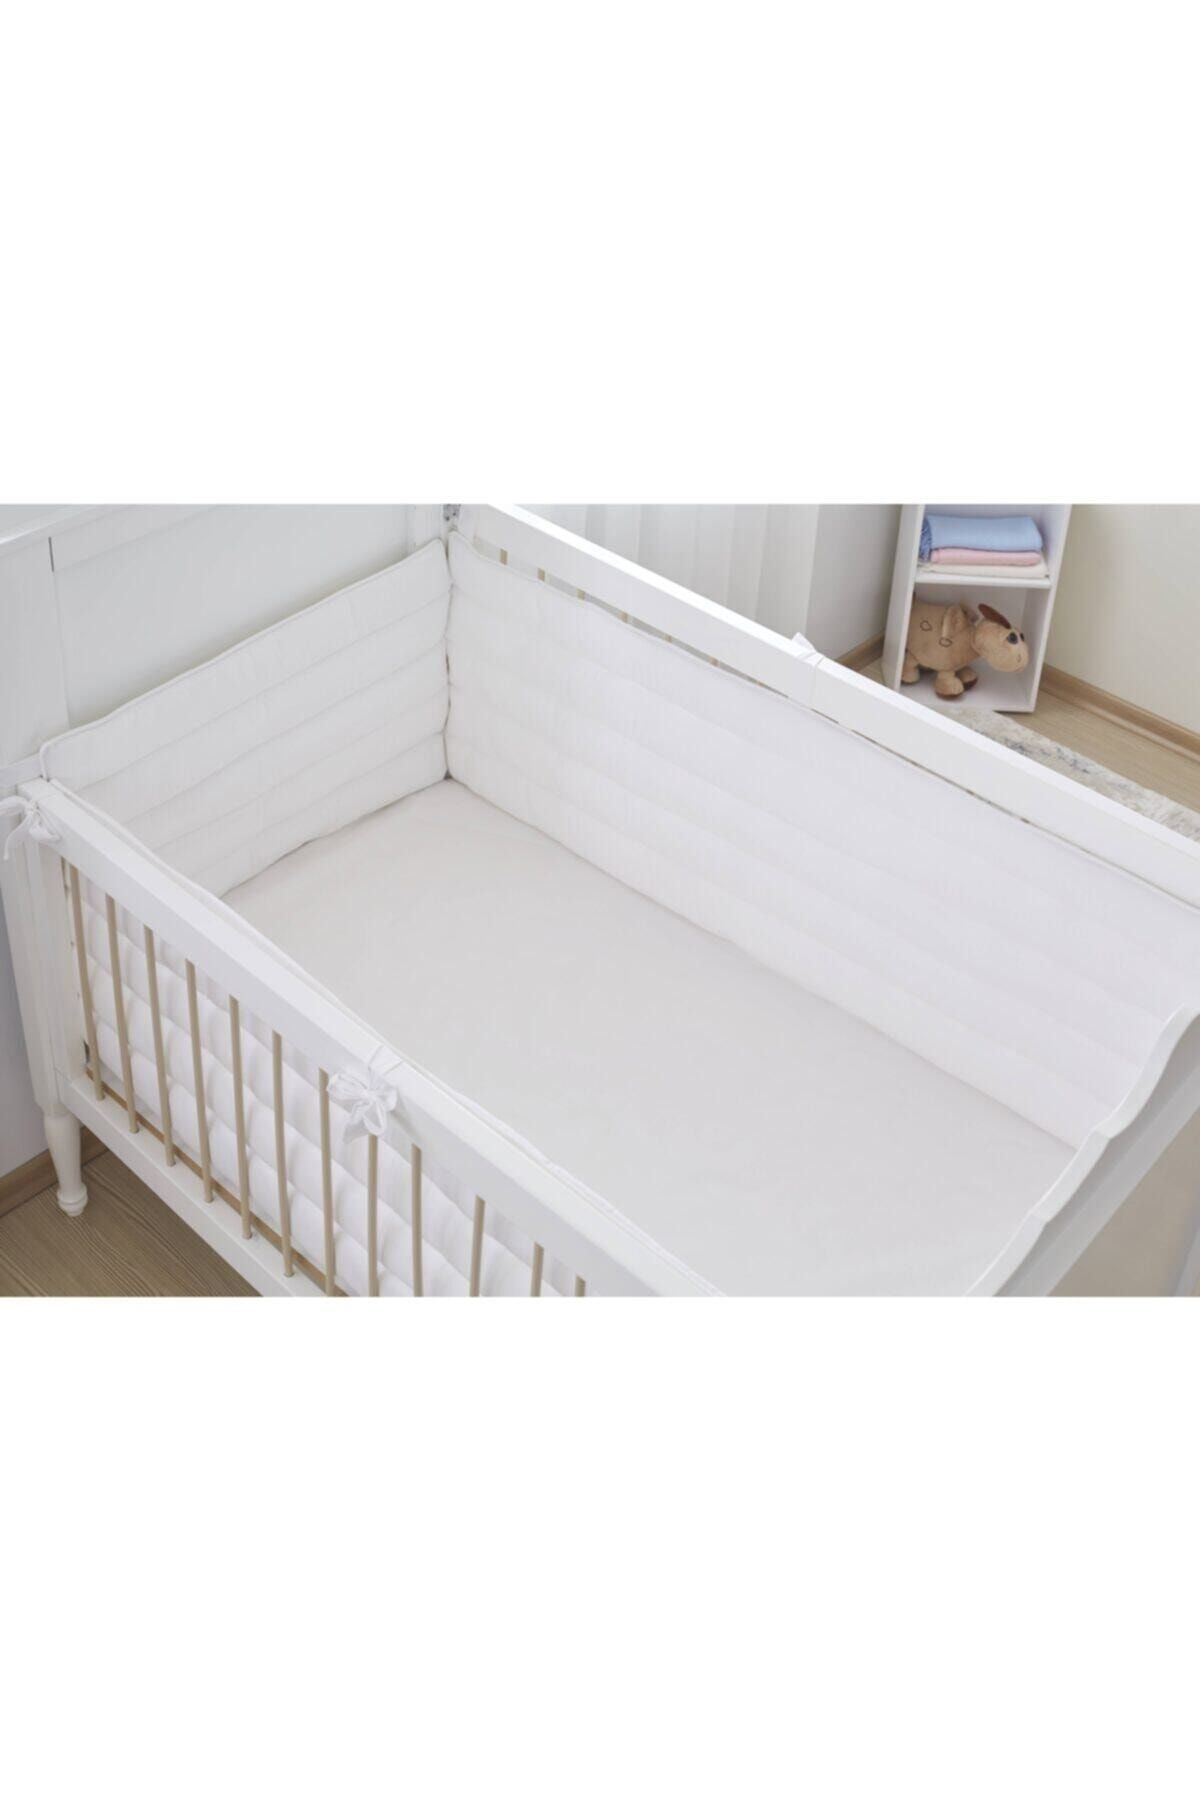 Aybi Baby Beşik Kenar Koruyucu Set 3 Parça - Beyaz - 60x120 Cm